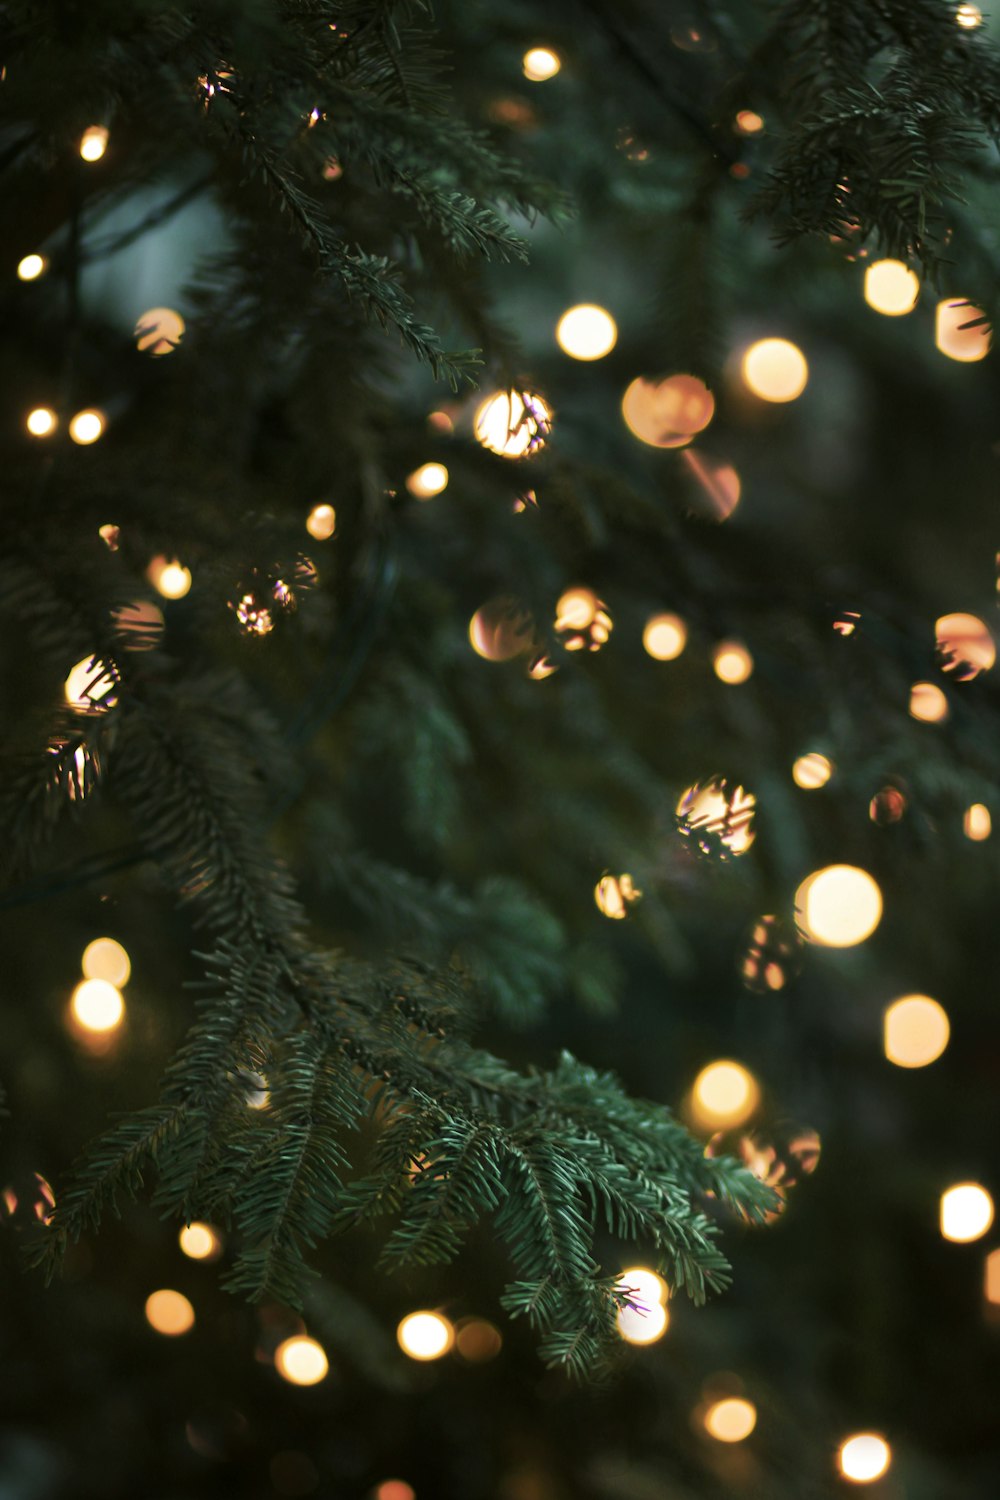 Phông nền Giáng sinh mang đến cho chúng ta cảm giác yên bình và an lành của mùa lễ hội. Hãy xem những hình ảnh phông nền Giáng sinh để thưởng thức không khí đầy cảm hứng và sức sống.